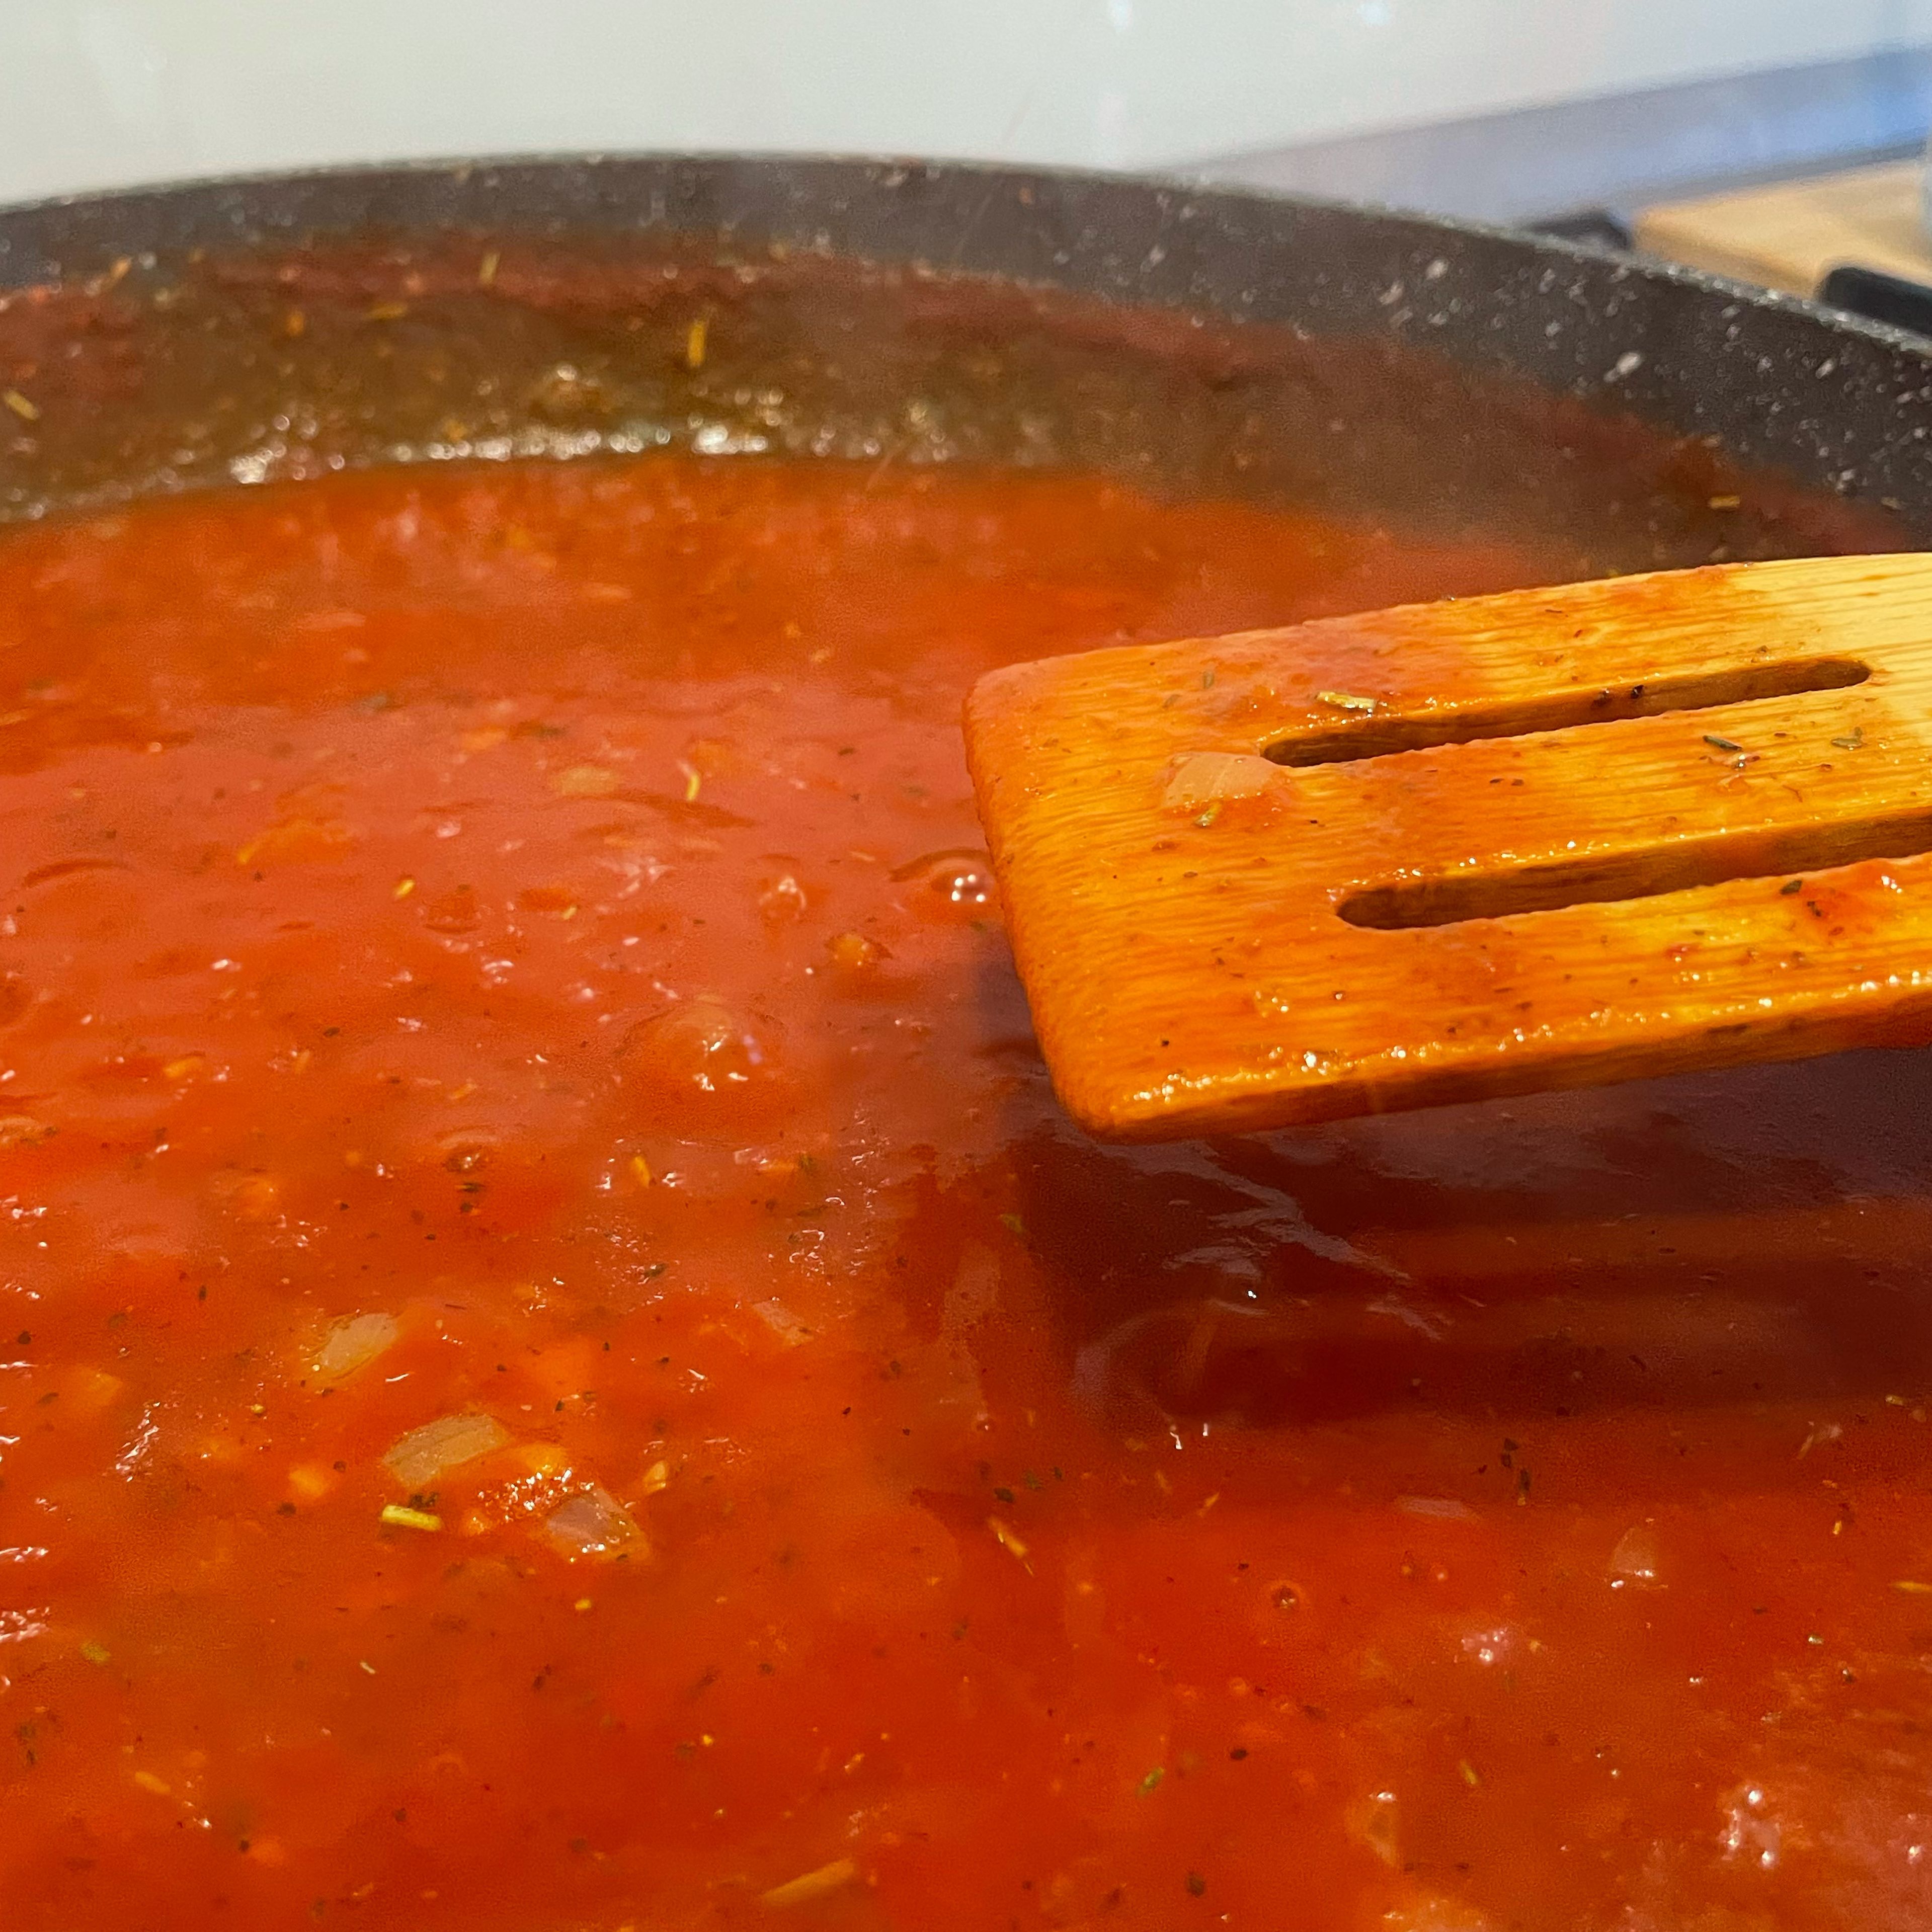 Eine klassische Tomatensauce herstellen. Also Zwiebeln und Knoblauch schneiden und anbraten. Passierte Tomaten drauf geben und gut würzen. Die Sauce kann dann erstmal ein bisschen einkochen